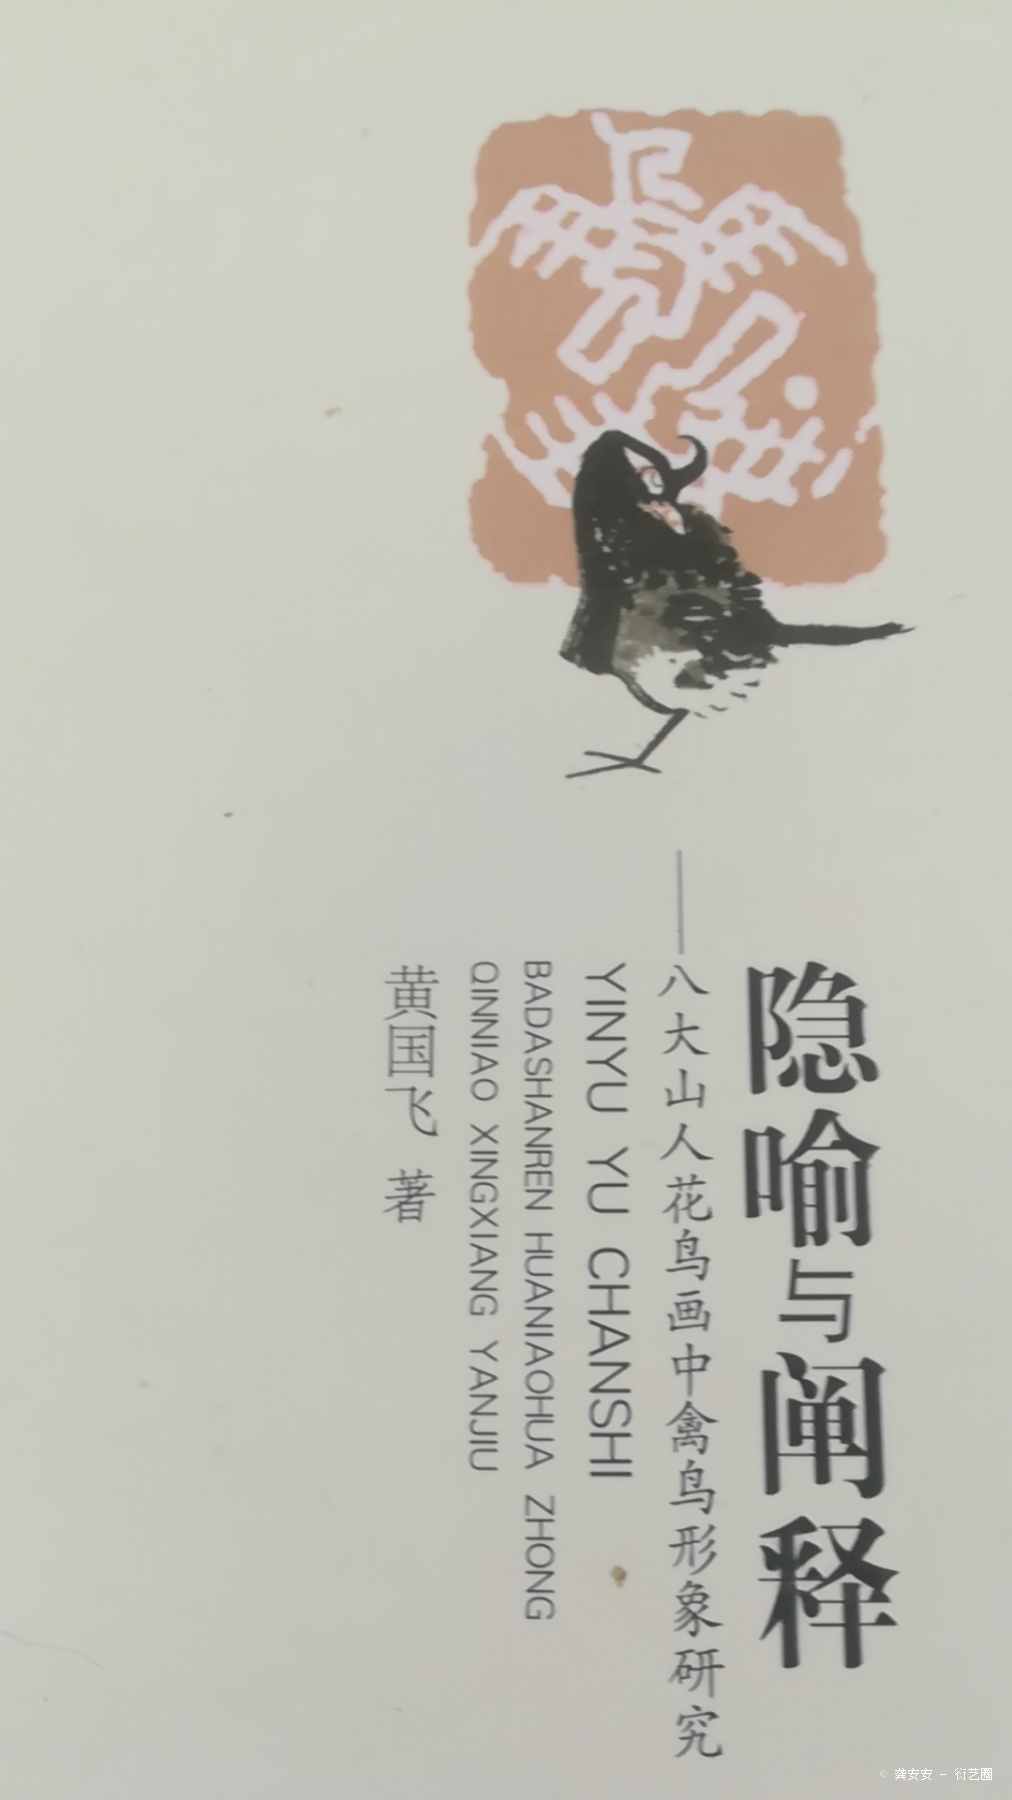 江西省艺术研究院黄国飞老师送我的研究著作，非常值得一读，涨知识